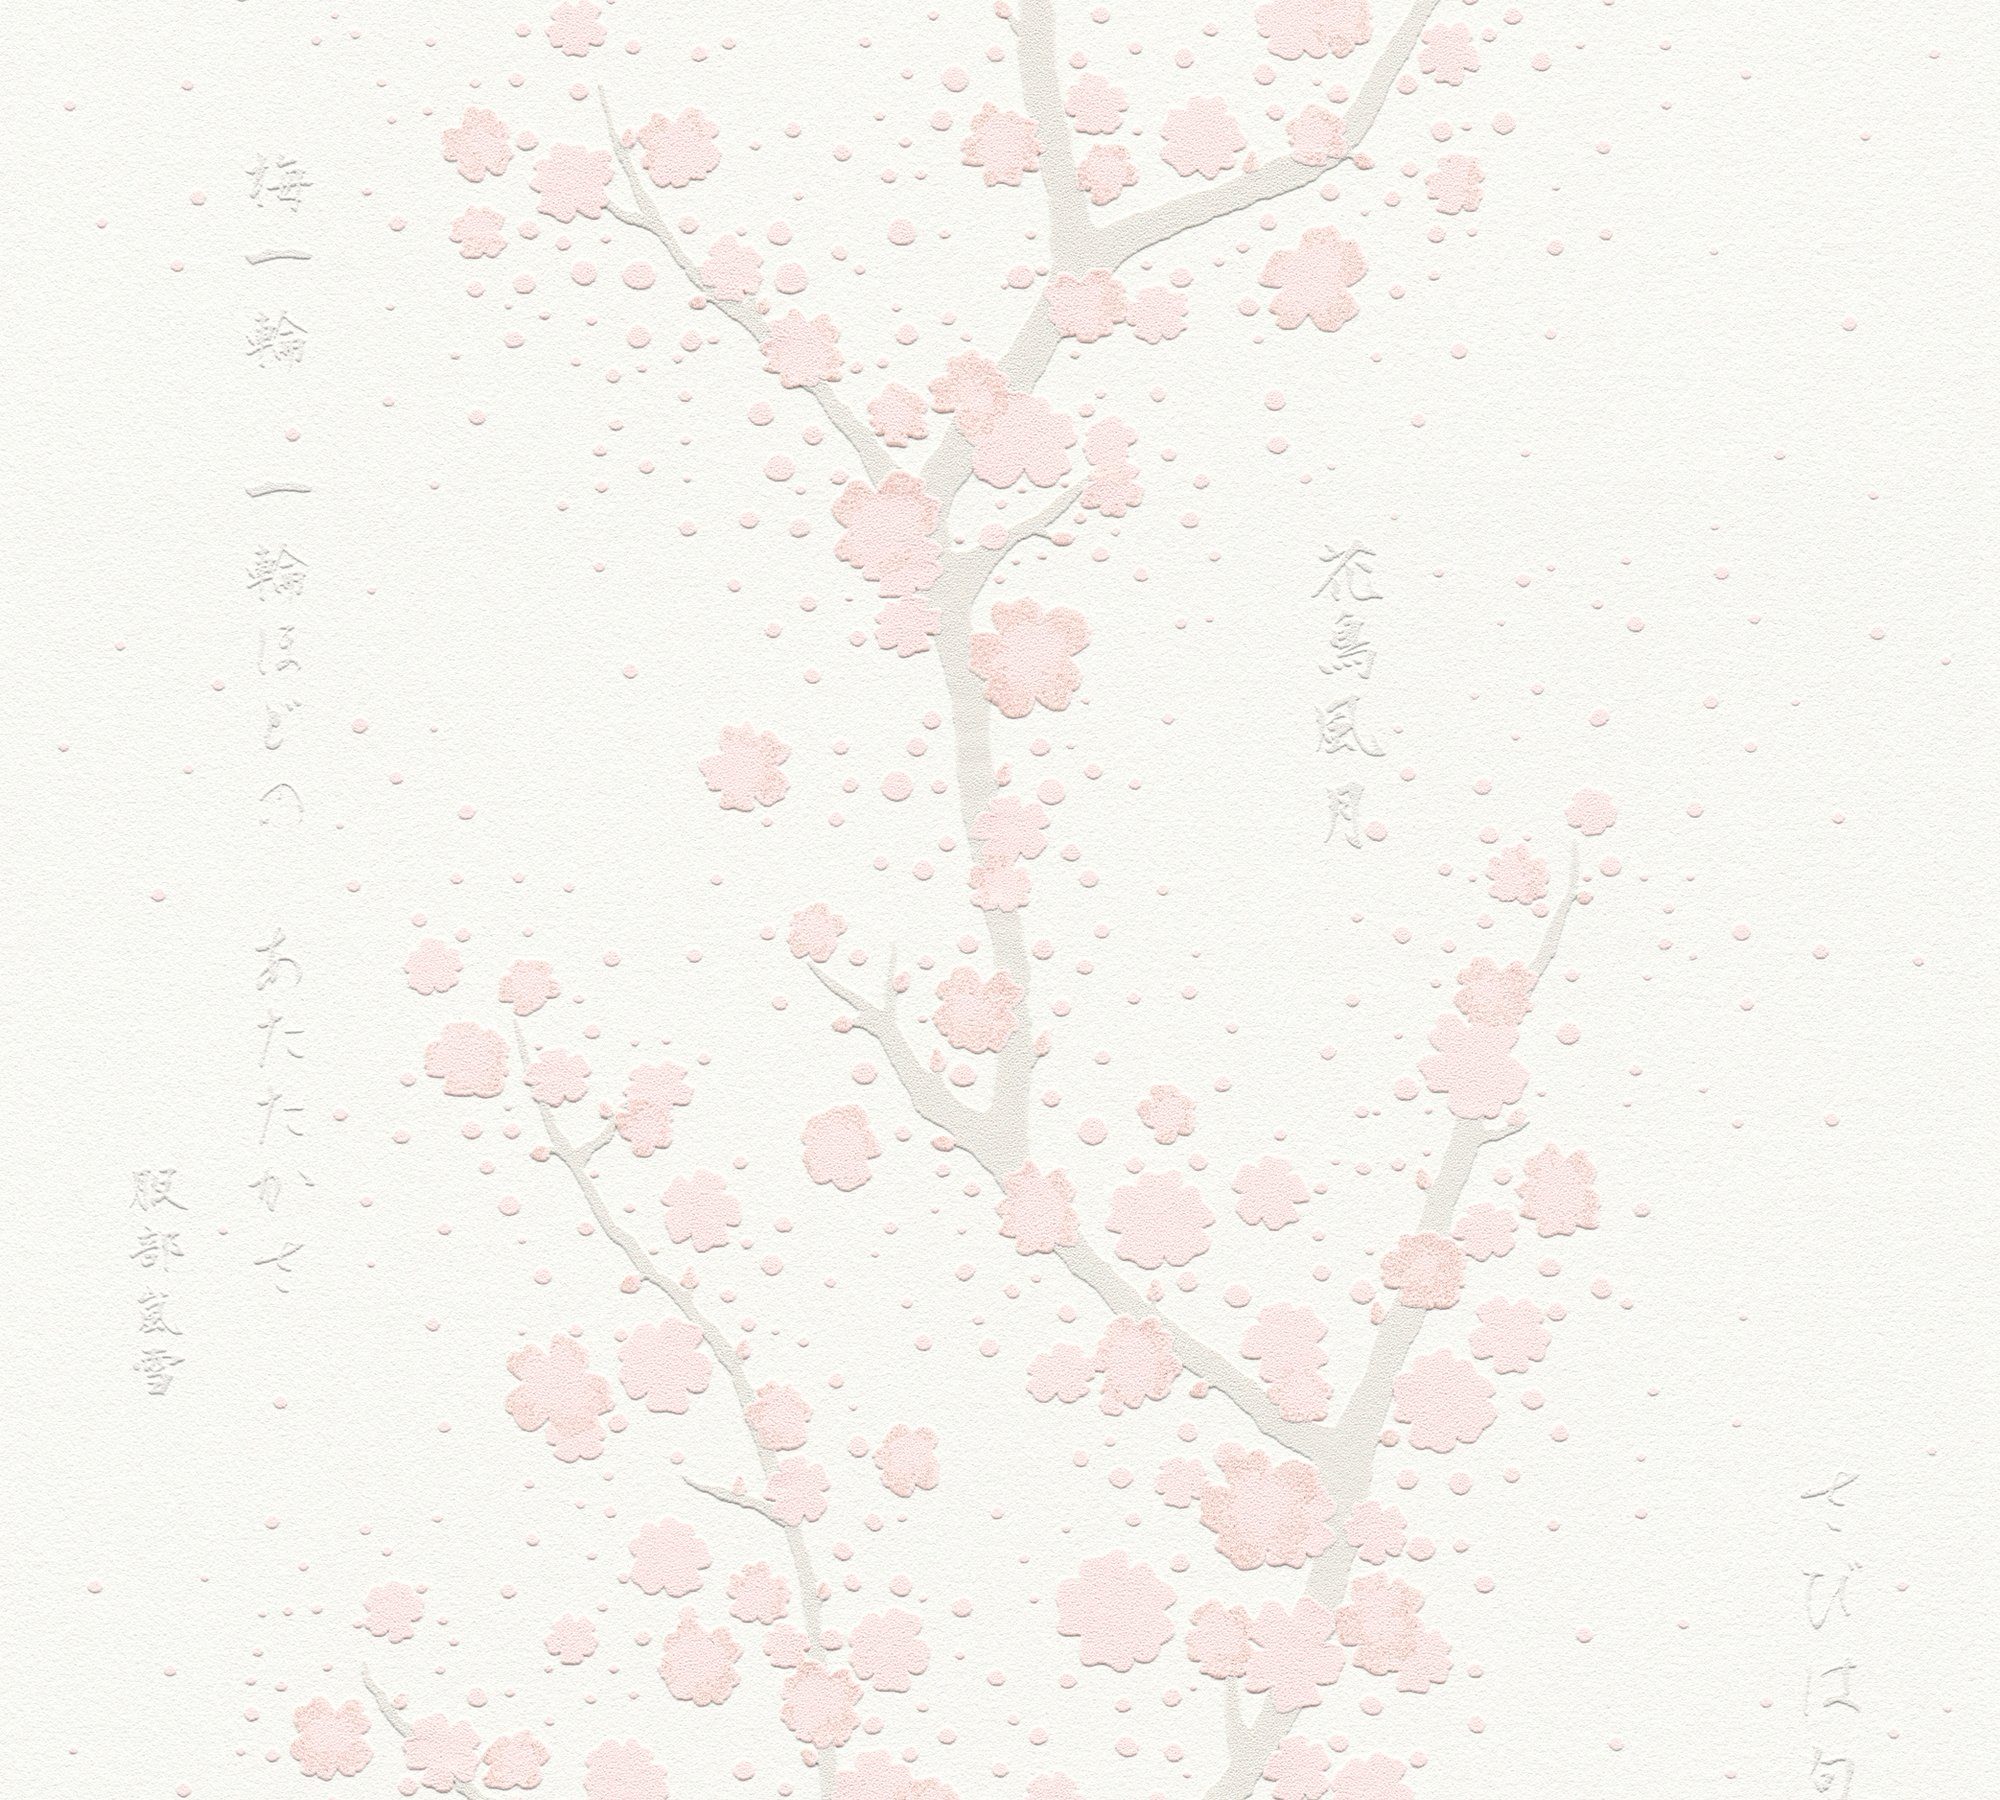 mit Création Vliestapete Blumentapete Fusion, aufgeschäumt, Asian A.S. Schrift, Japanisch Tapete weiß/rosa/hellgrau floral, asiatisch,